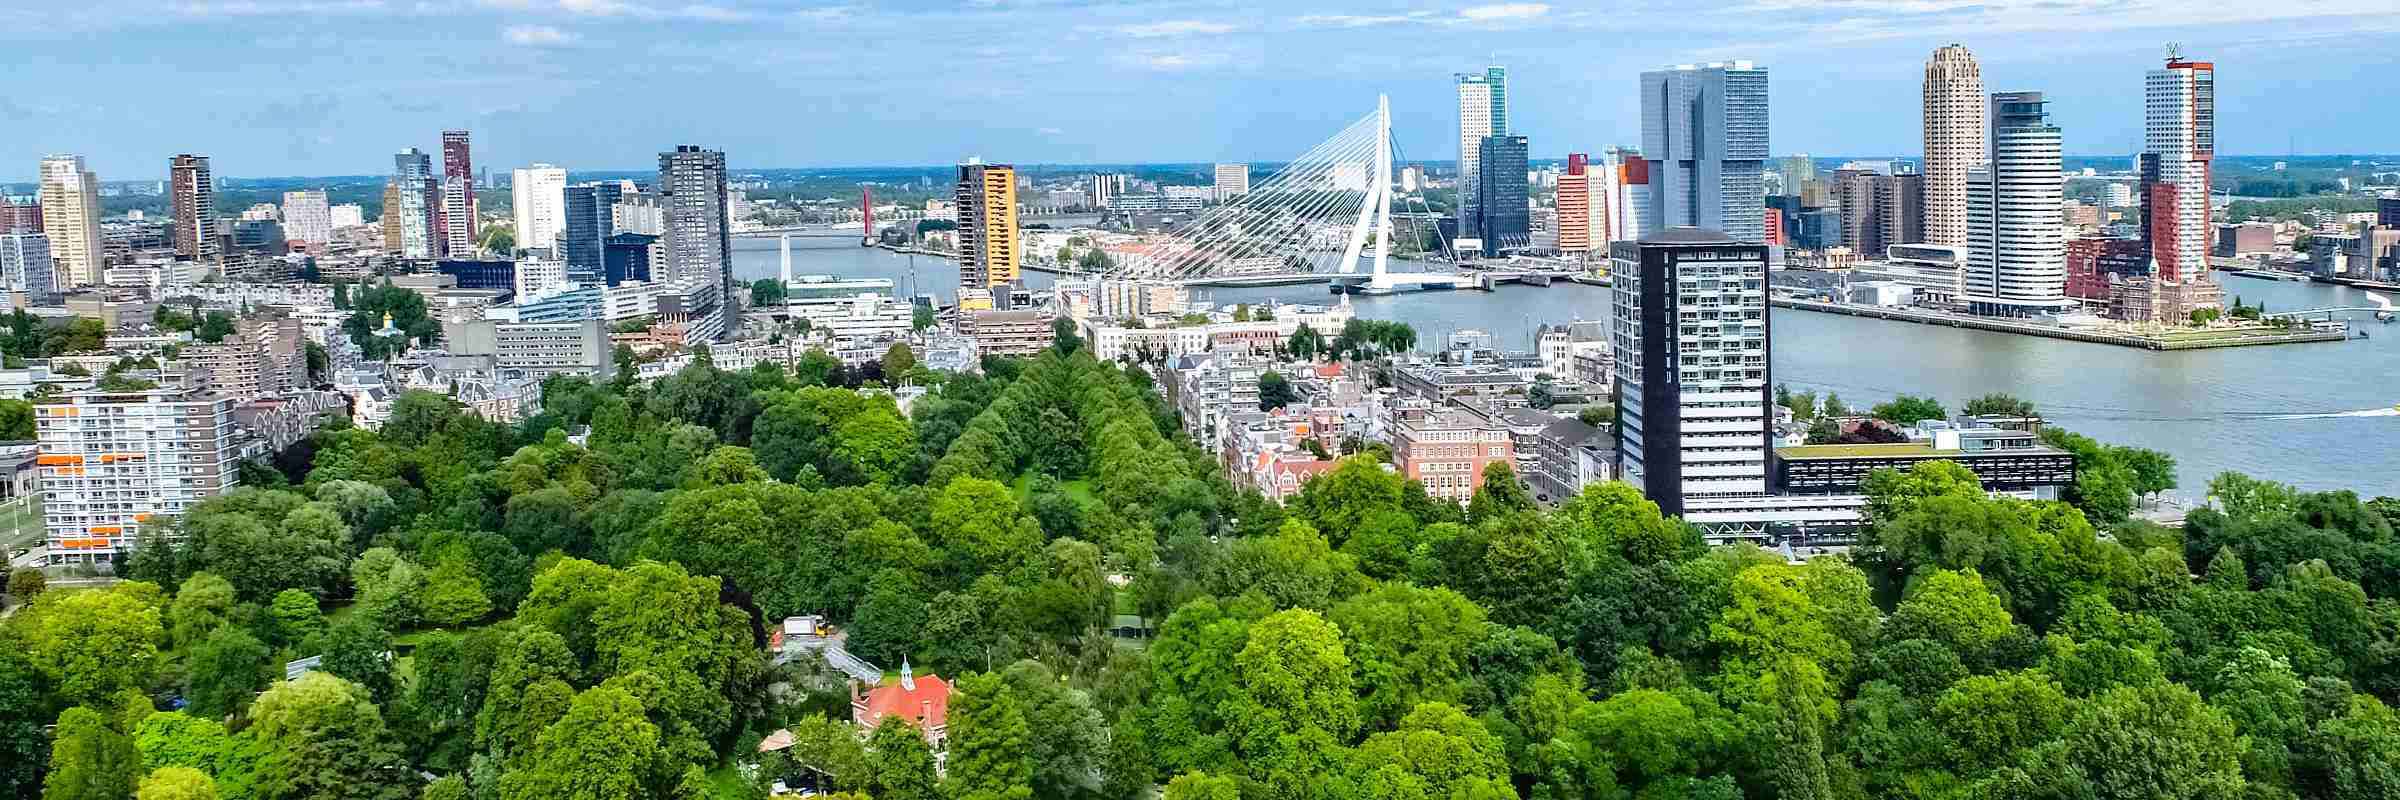 Luftansicht der Stadt mit hohen Gebäuden und Grünflächen